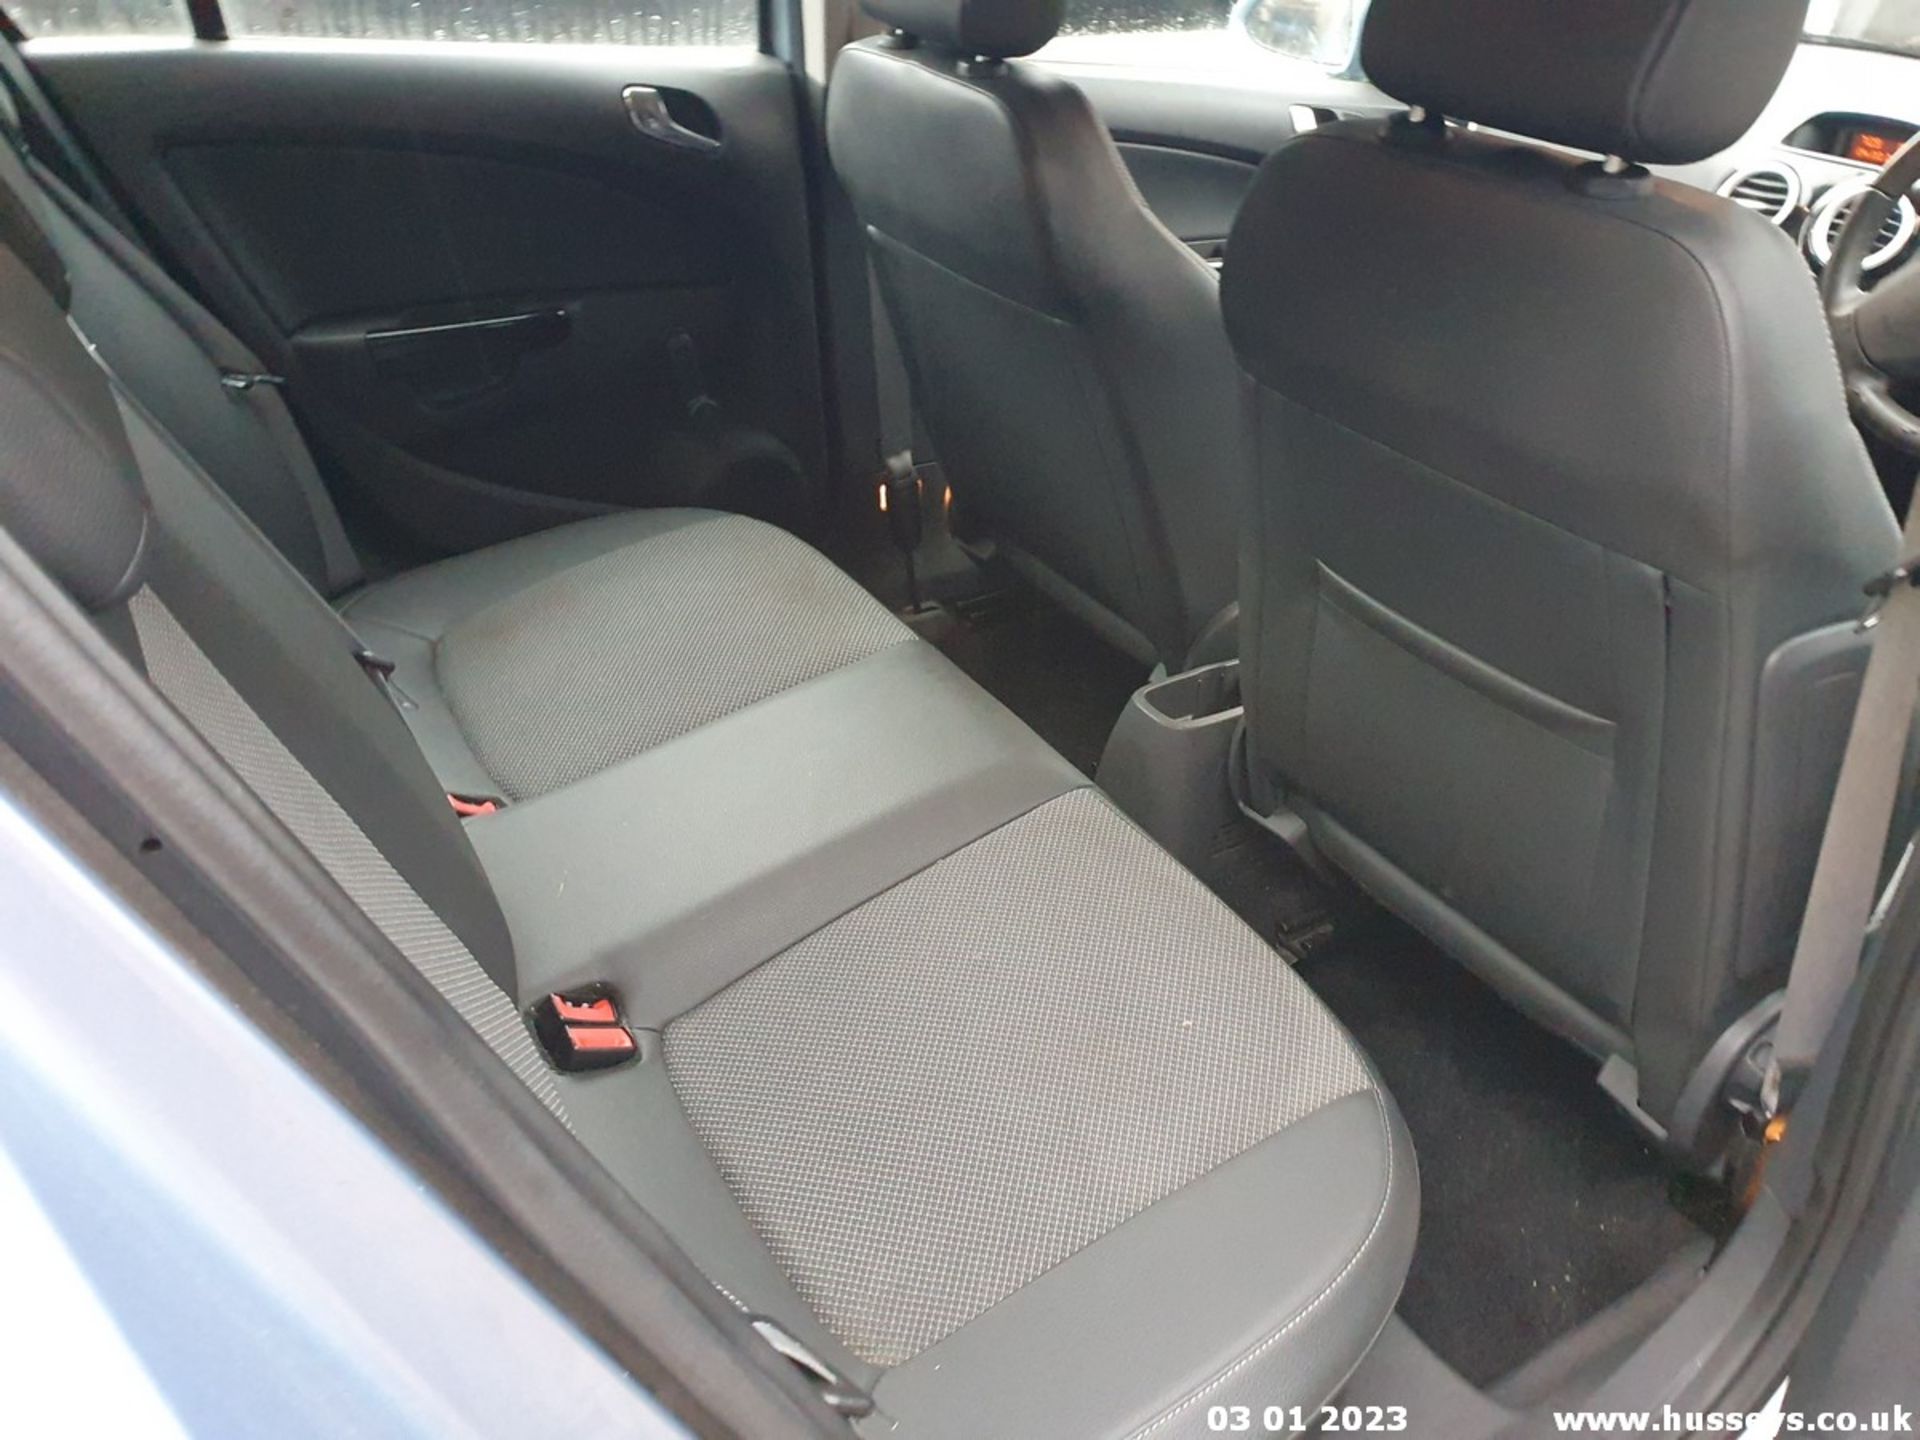 08/08 VAUXHALL CORSA DESIGN - 1229cc 5dr Hatchback (Blue, 57k) - Image 18 of 20